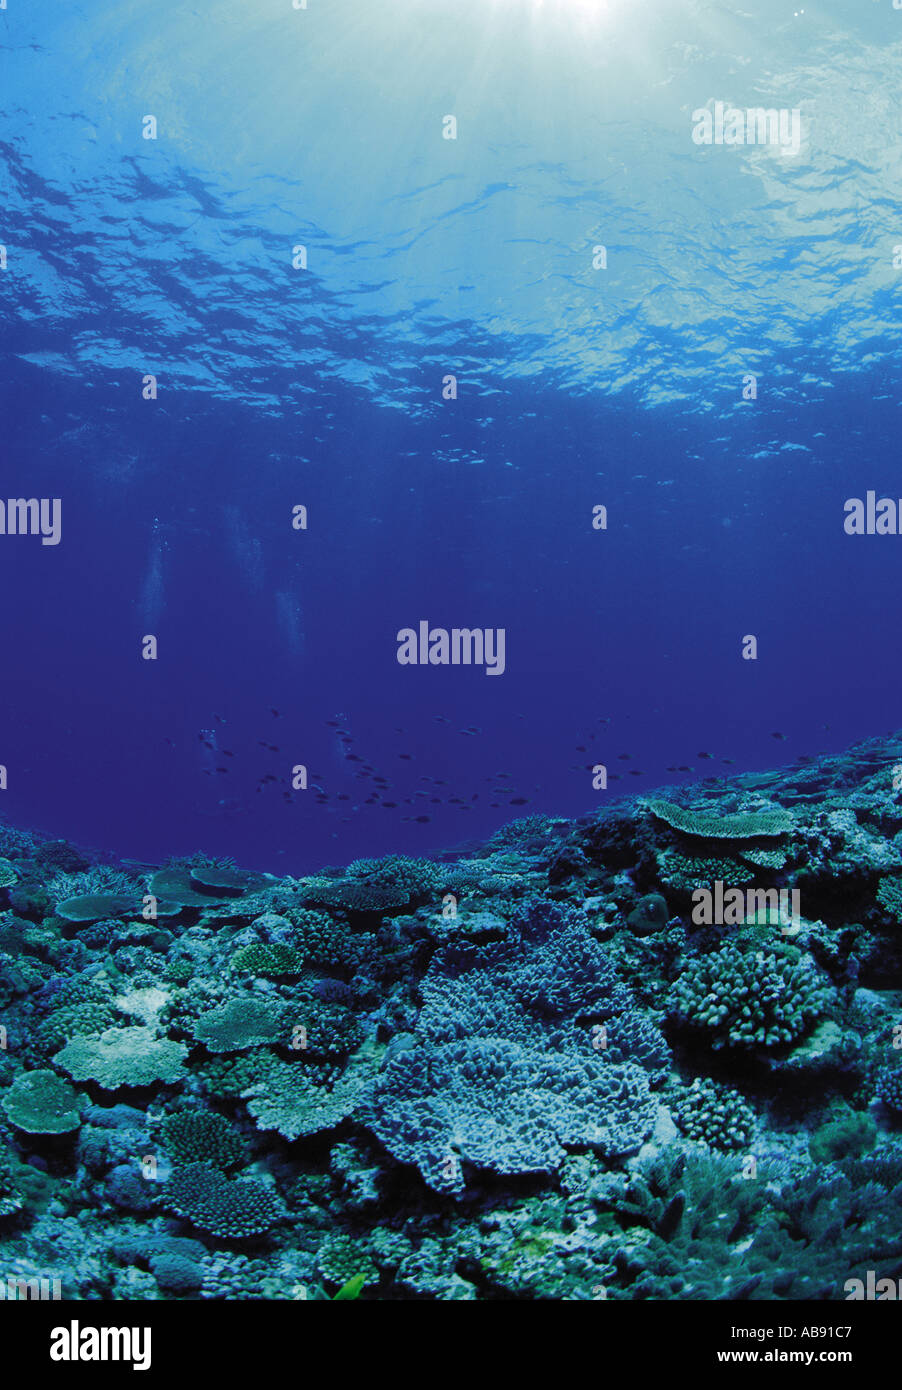 Fondale marino immagini e fotografie stock ad alta risoluzione - Alamy